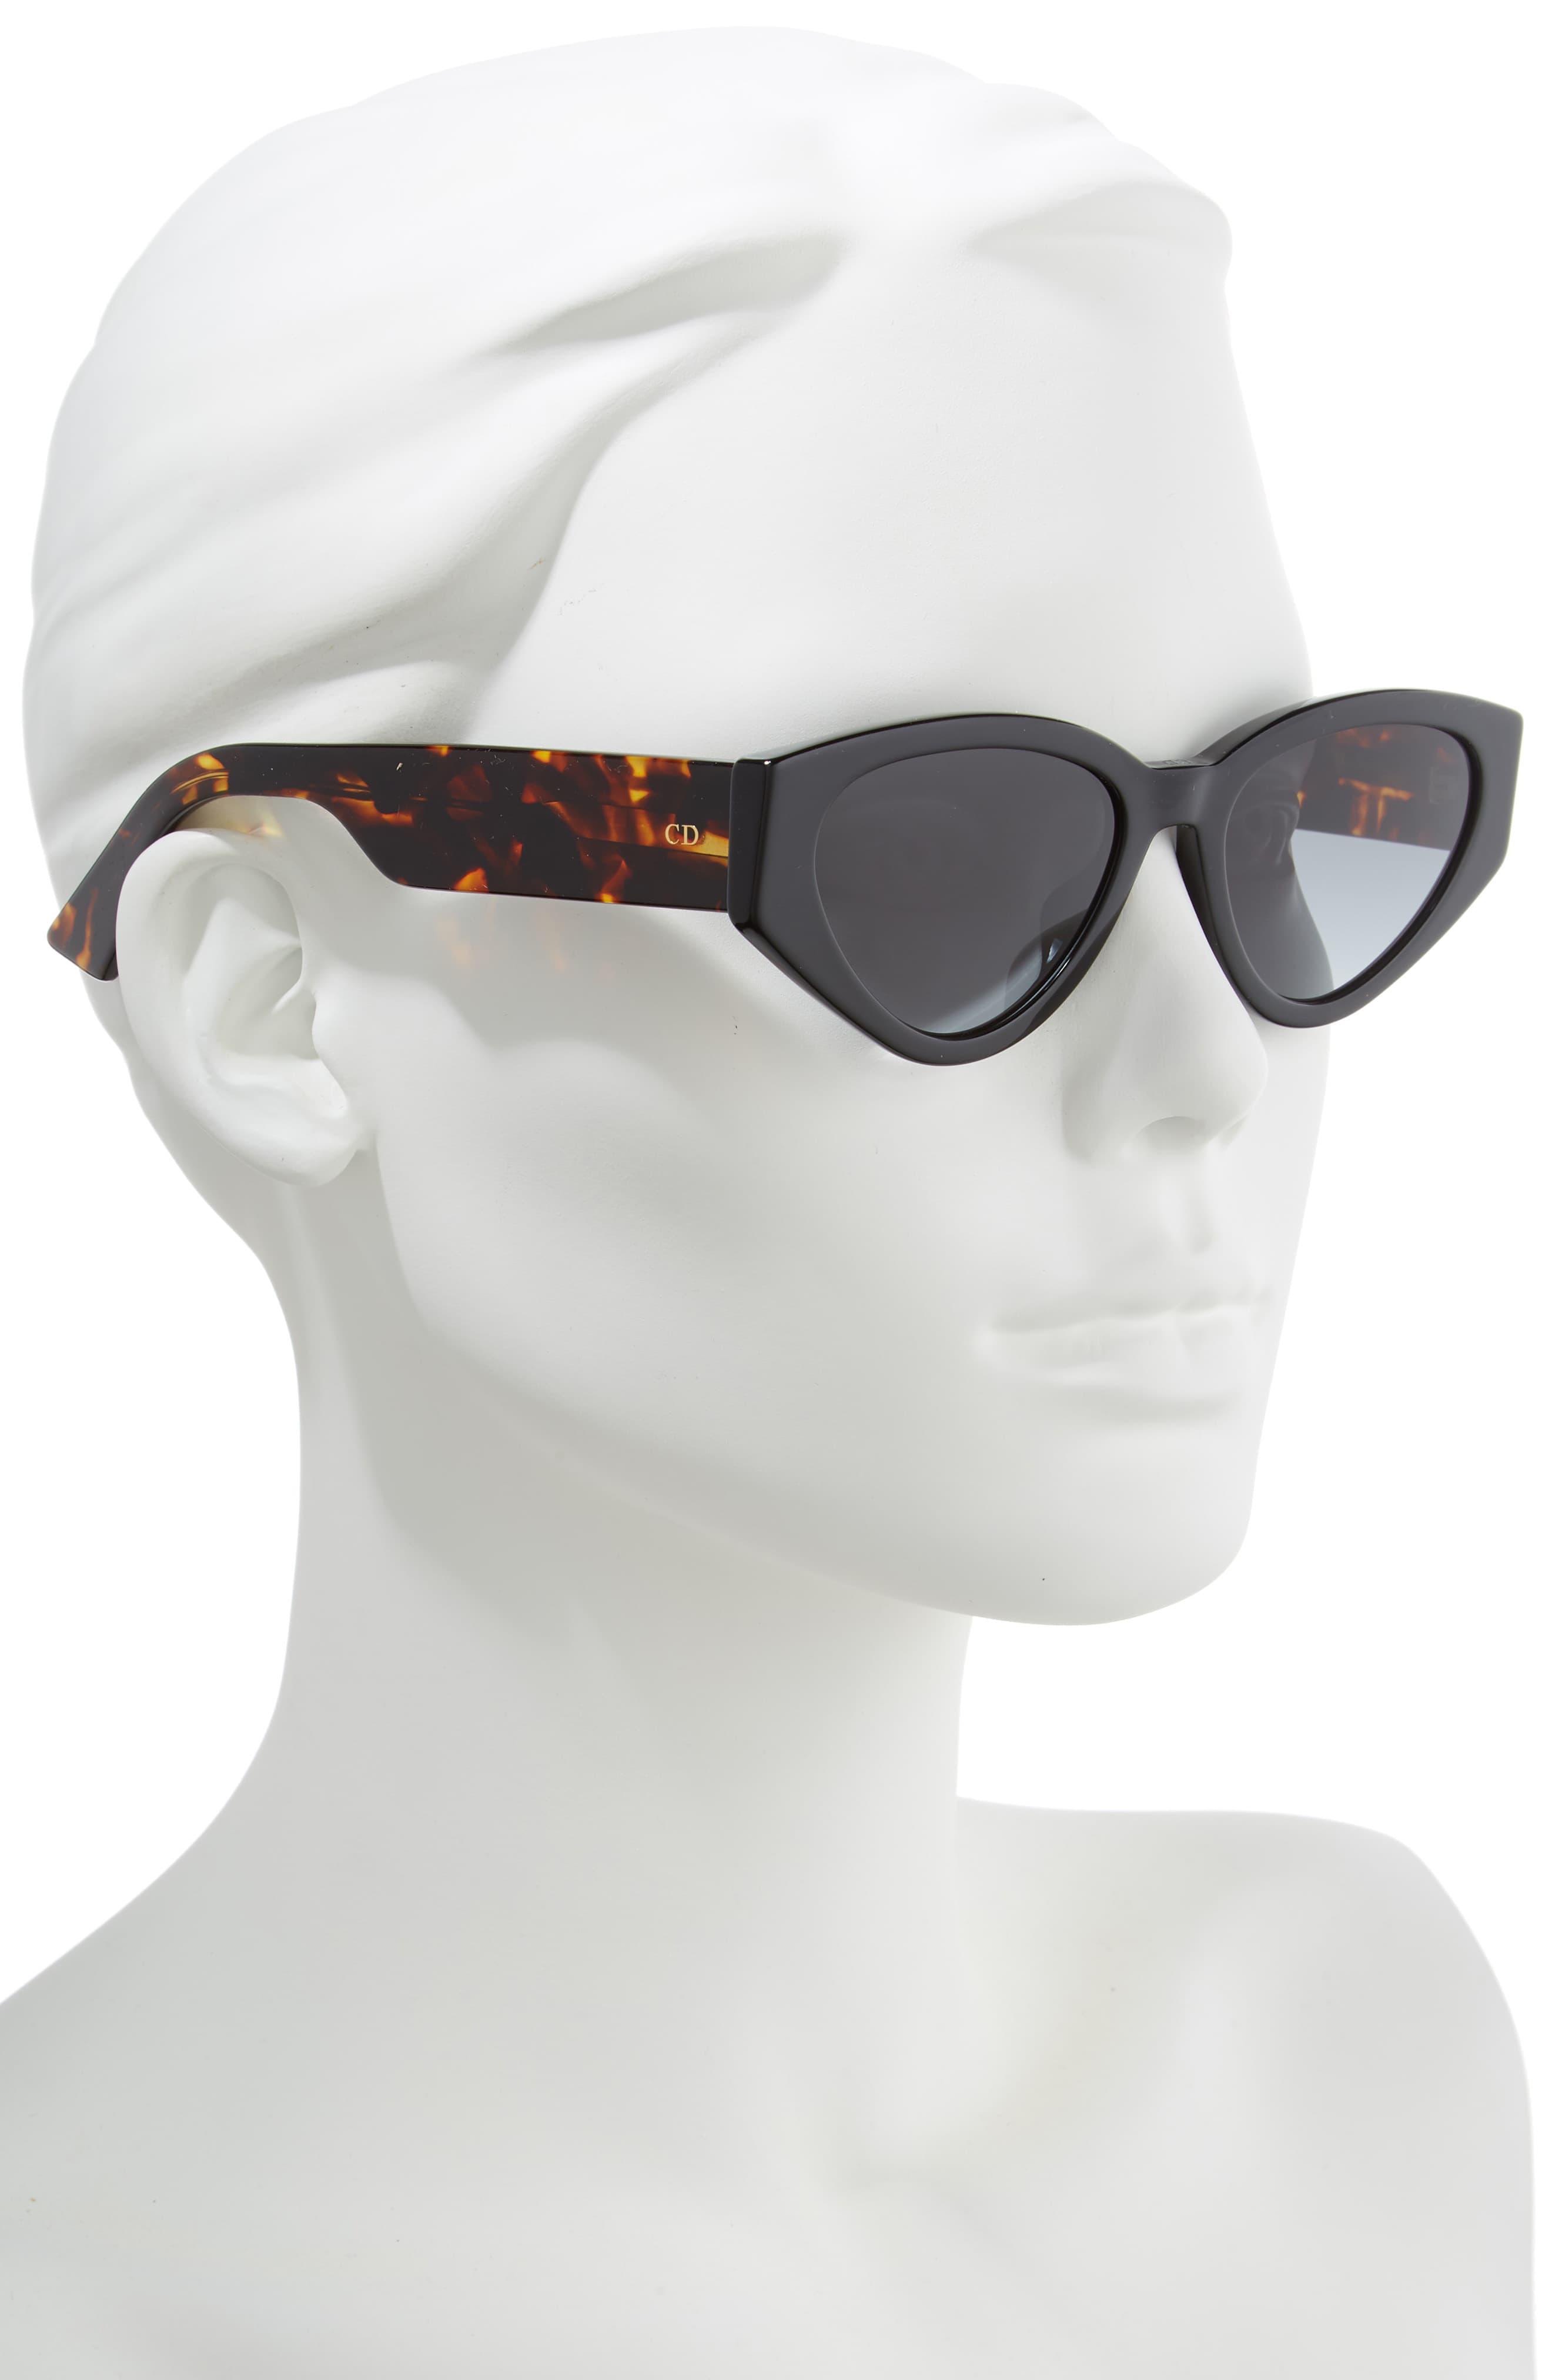 dior spirit 2 sunglasses, OFF 78%,Buy!